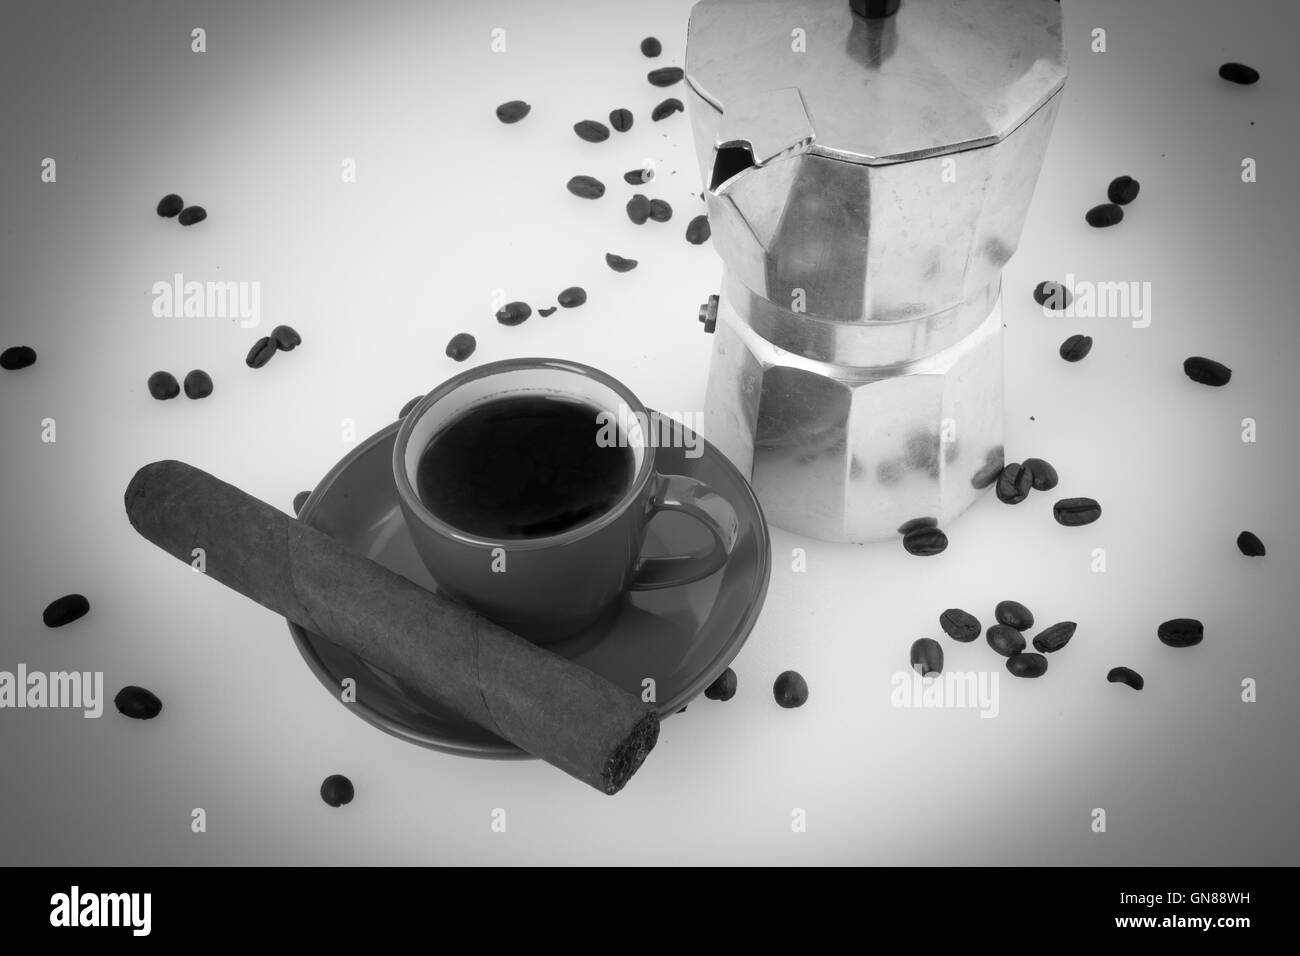 Kubanischen Kaffee Bohnen Espresso Maschine kubanische Zigarre Kaffee schwarz und weiß Stockfoto